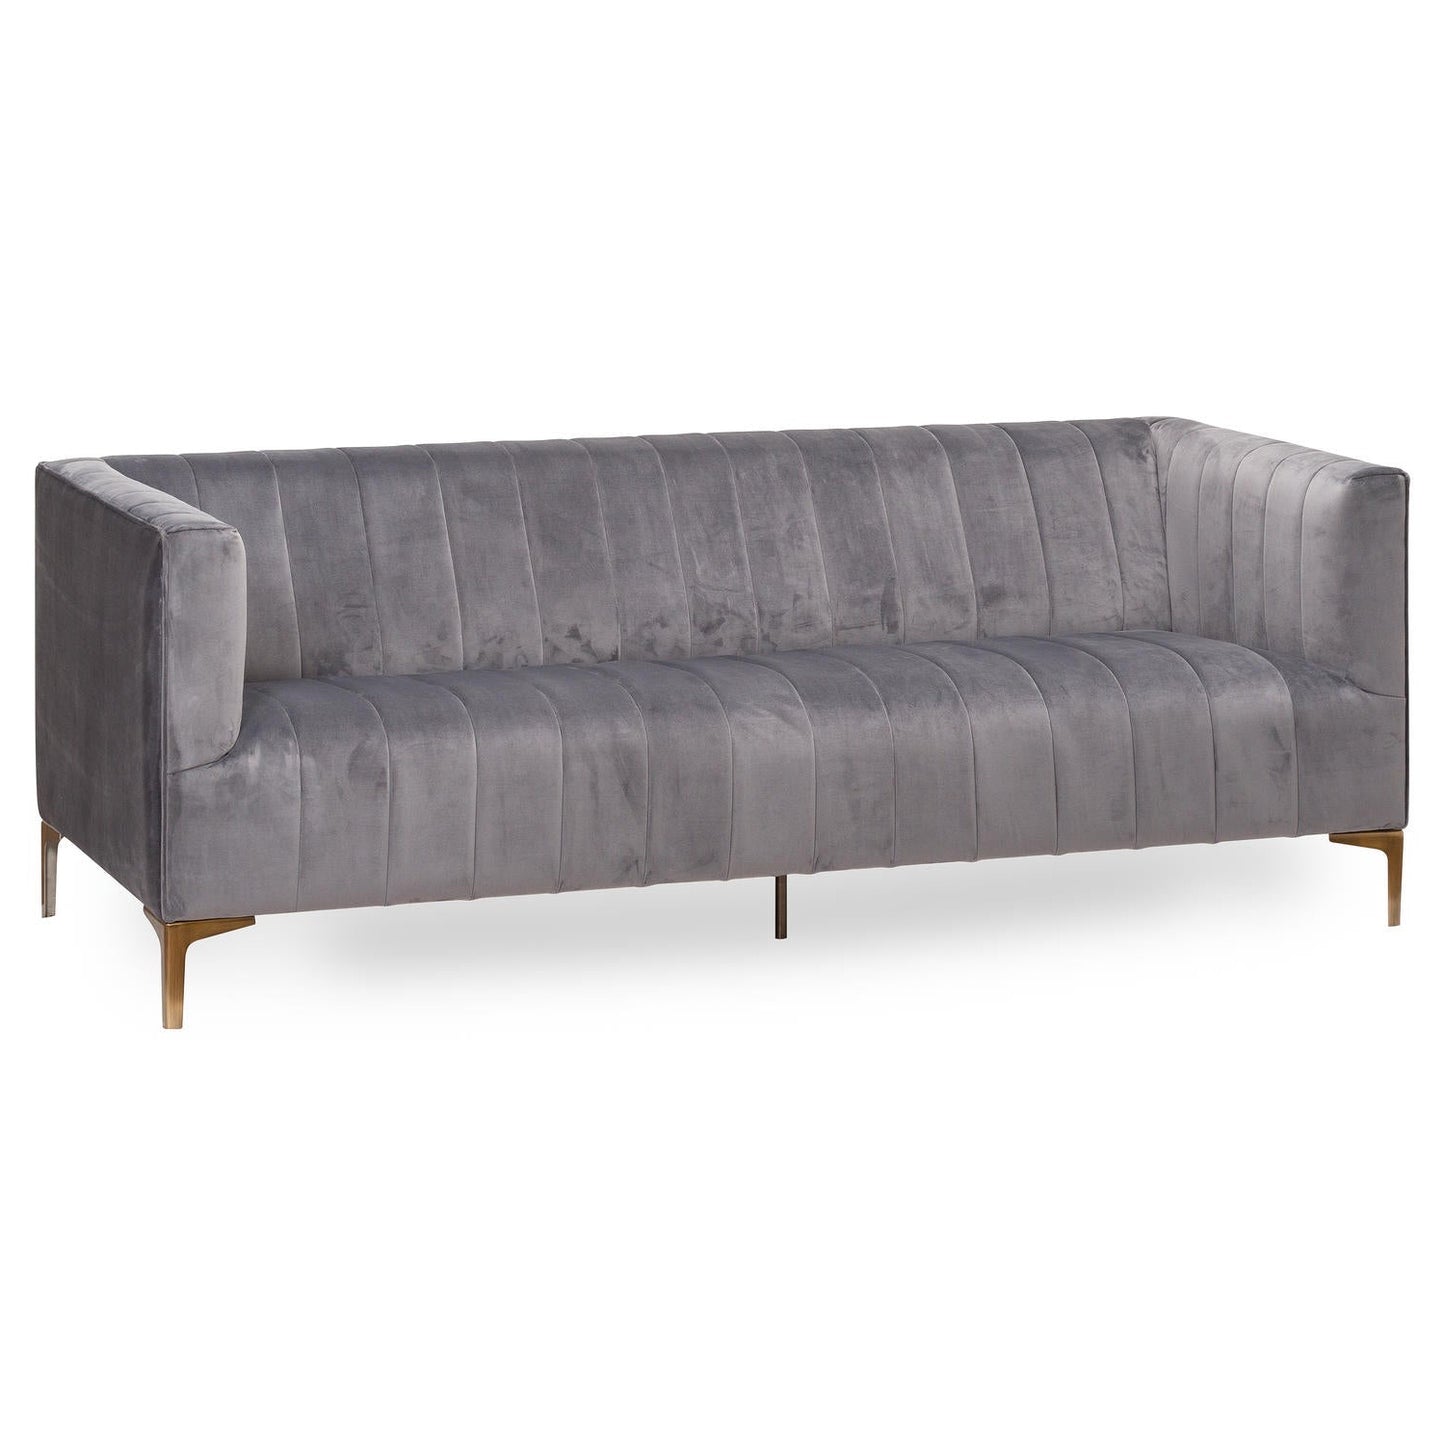 Grey Velvet Tufted 2 Seater Sofa with Chrome Legs